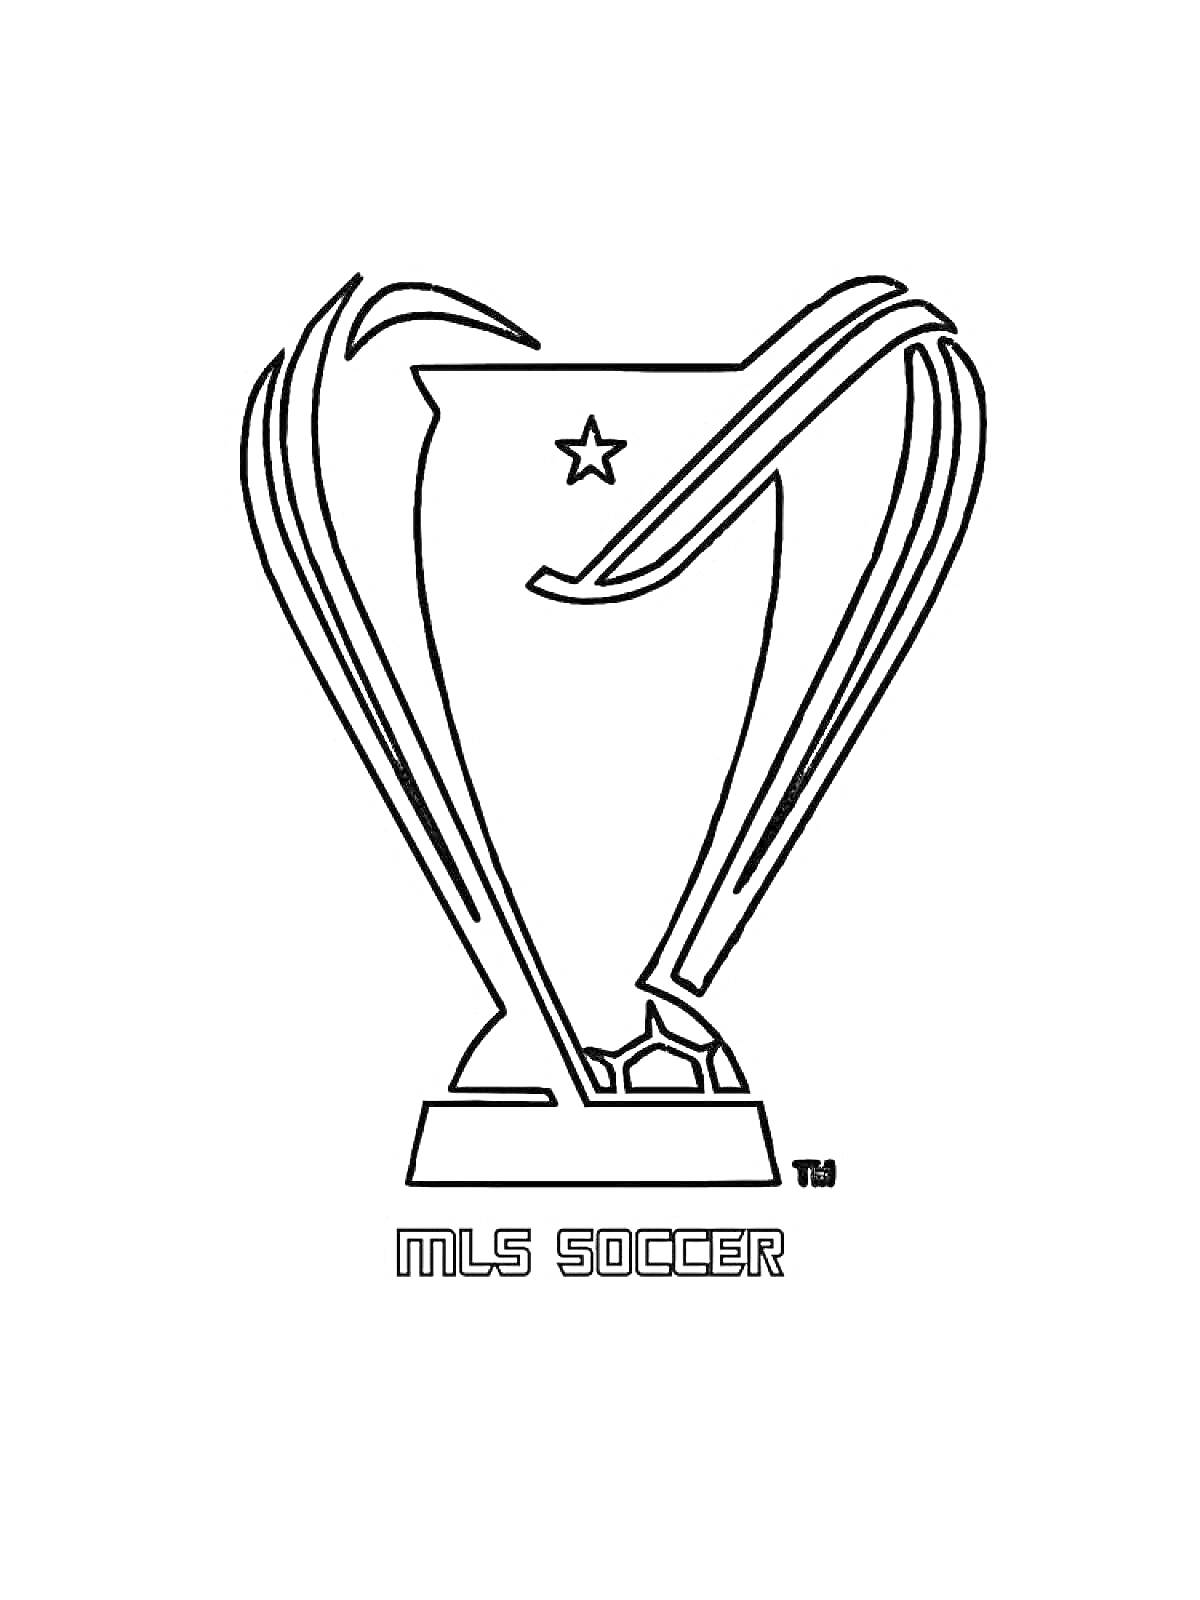 Кубок MLS Soccer с звездой и логотипом